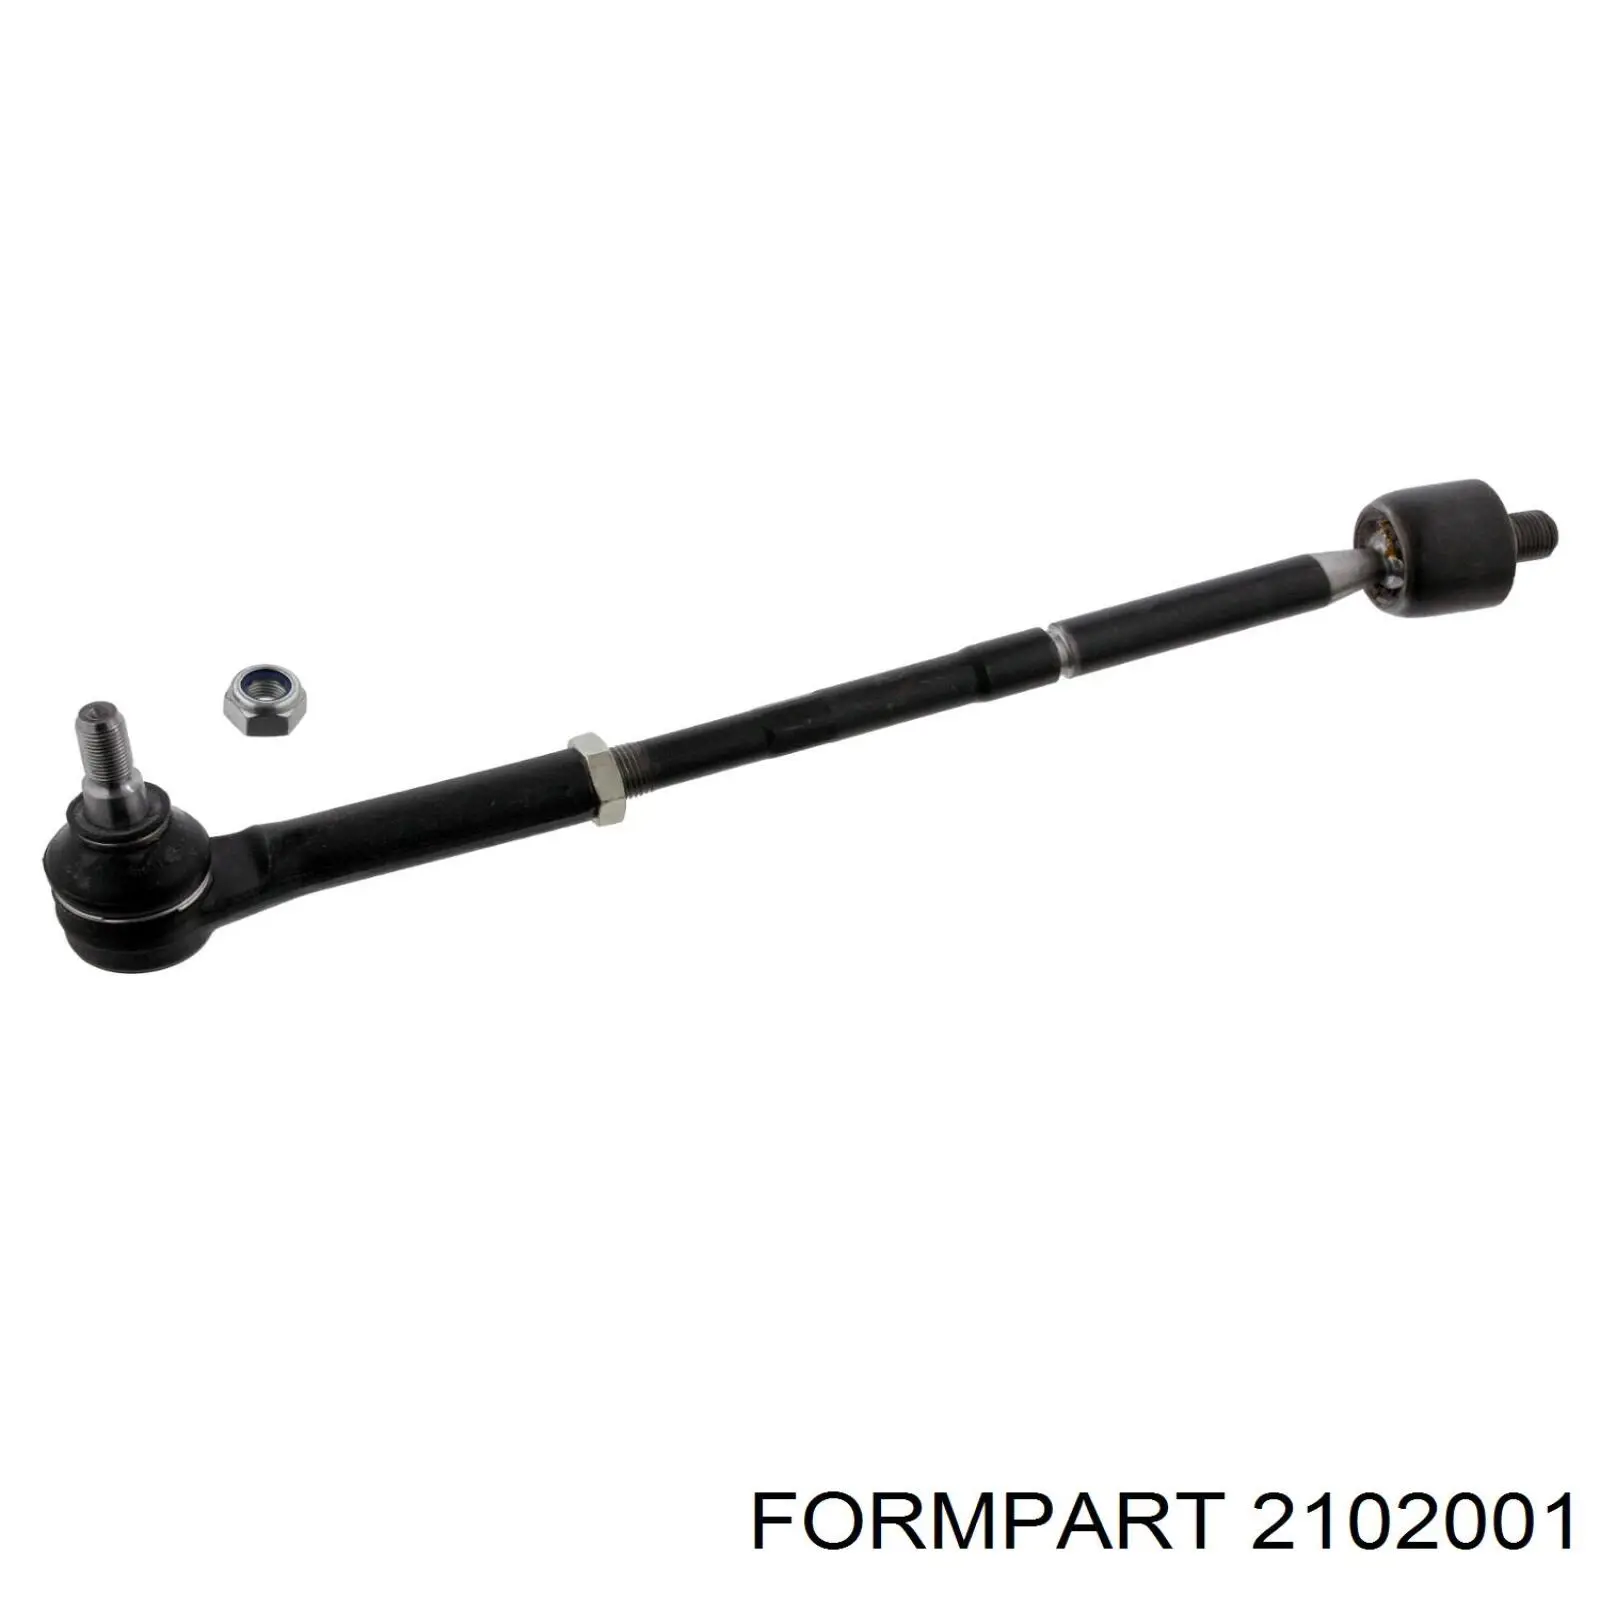 2102001 Formpart/Otoform rótula barra de acoplamiento exterior